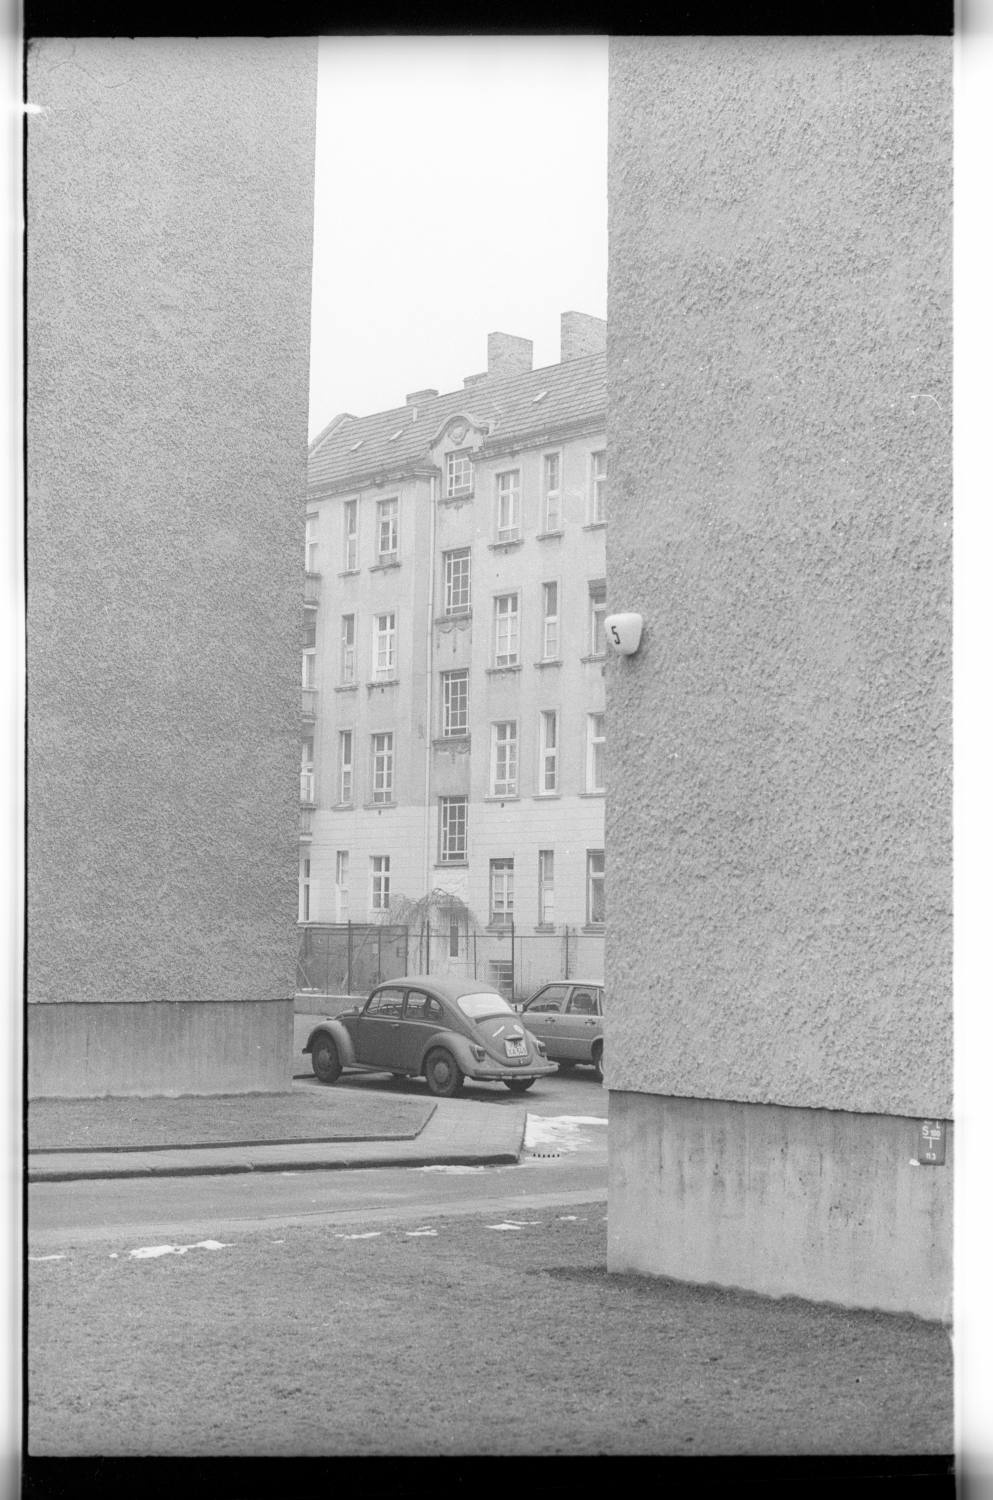 Kleinbildnegativ: Hinterhof, Cranachstraße, 1979 (Museen Tempelhof-Schöneberg/Jürgen Henschel RR-F)